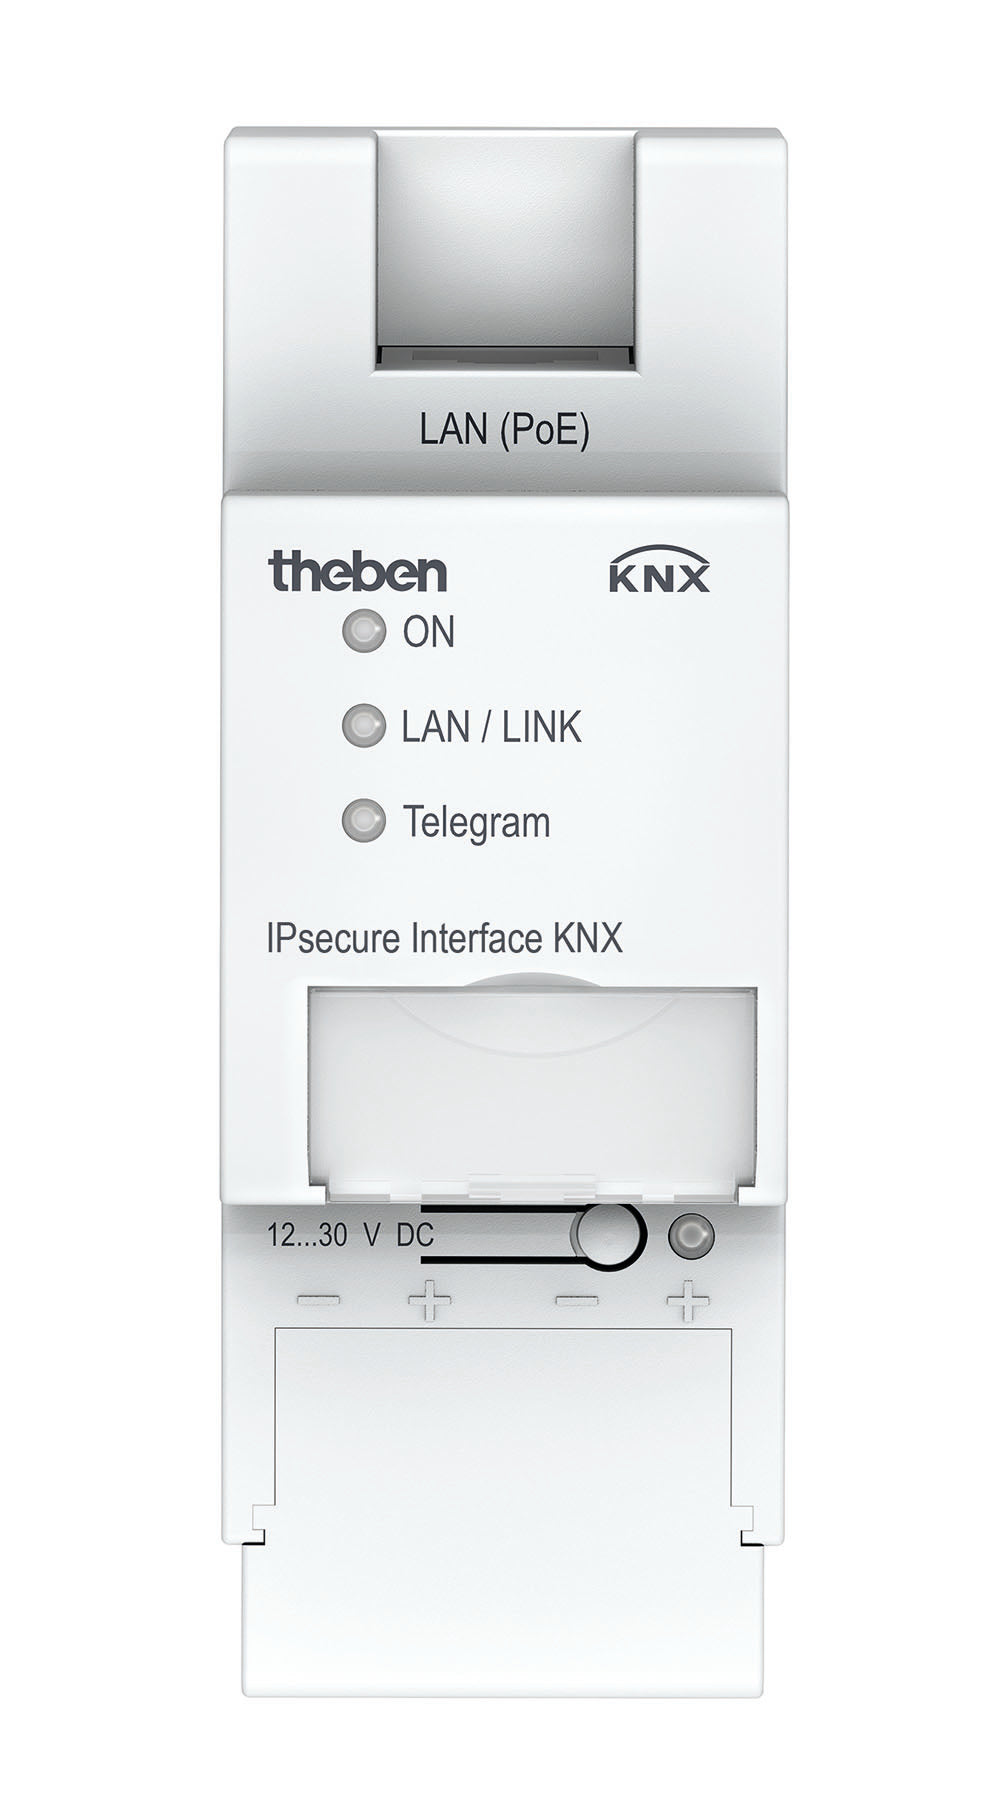 THEBEN Schnittstelle IP und KNX, Unterstützung von KNX IP Secure